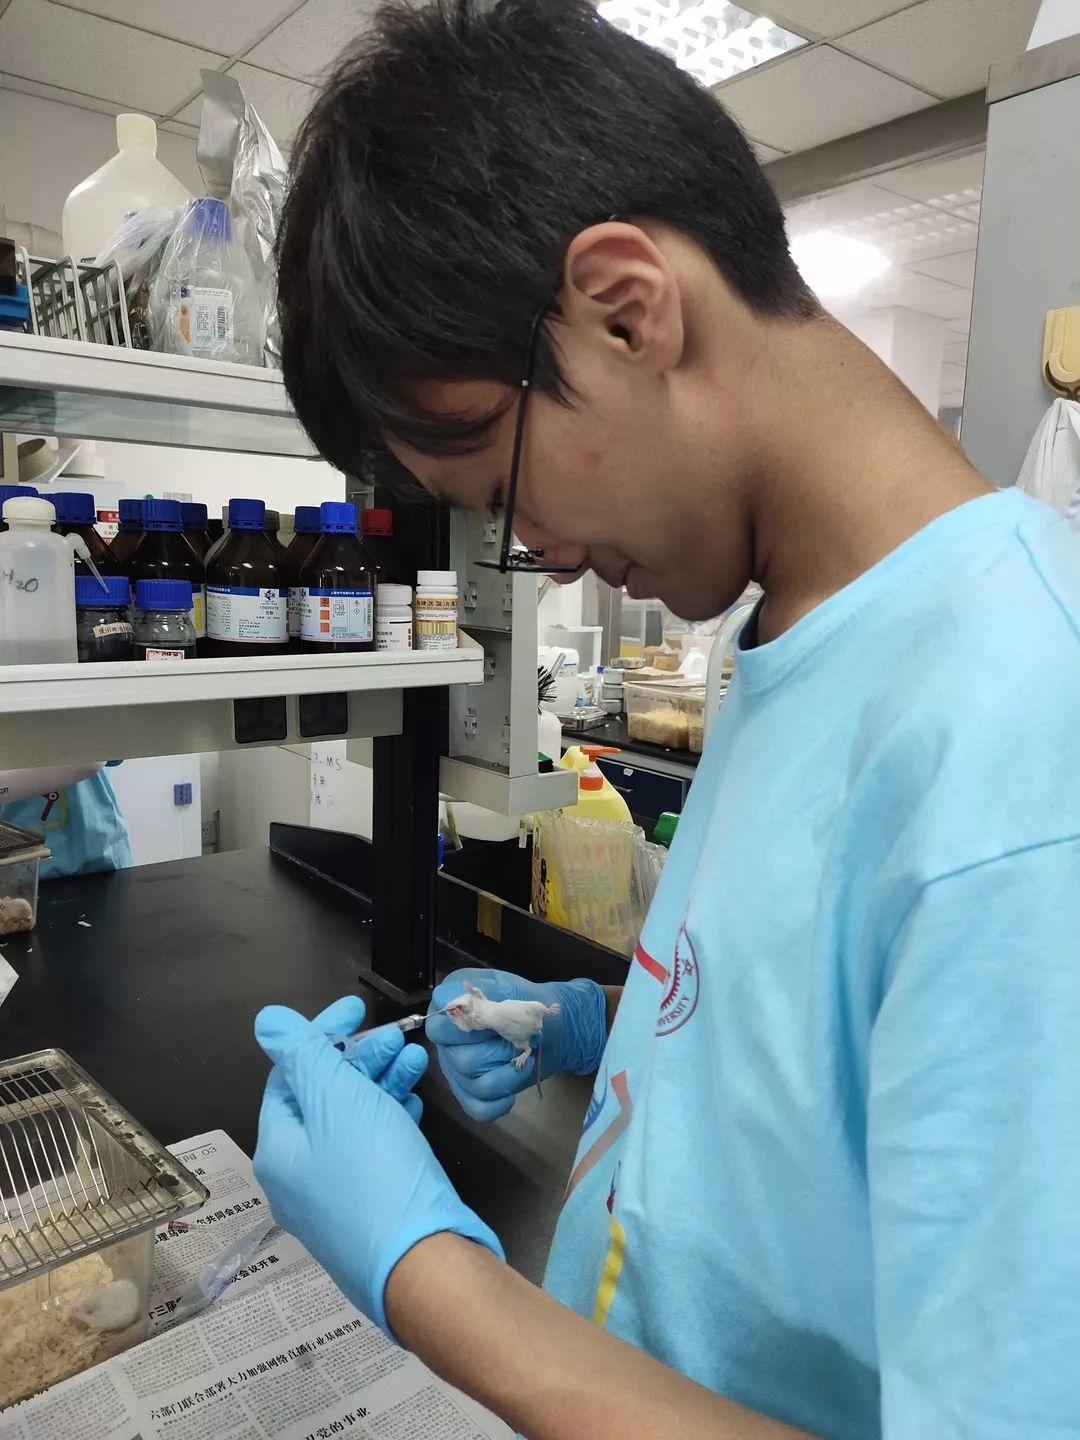 Pao students shine at biomedical engineering summer camp